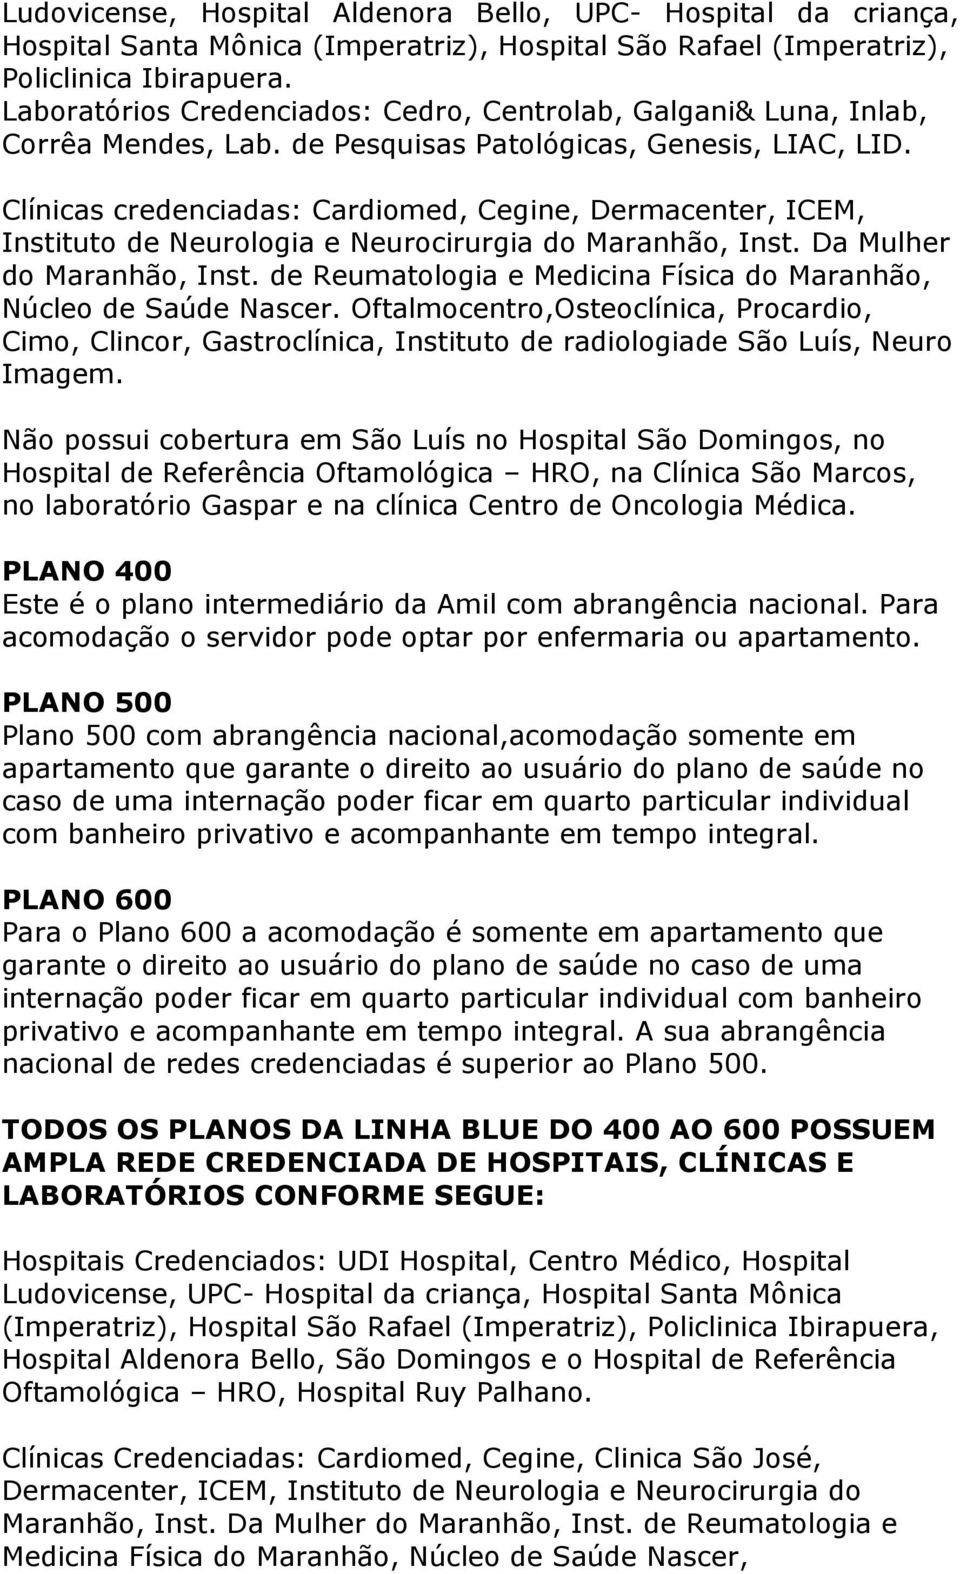 Clínicas credenciadas: Cardiomed, Cegine, Dermacenter, ICEM, Instituto de Neurologia e Neurocirurgia do Maranhão, Inst. Da Mulher do Maranhão, Inst.